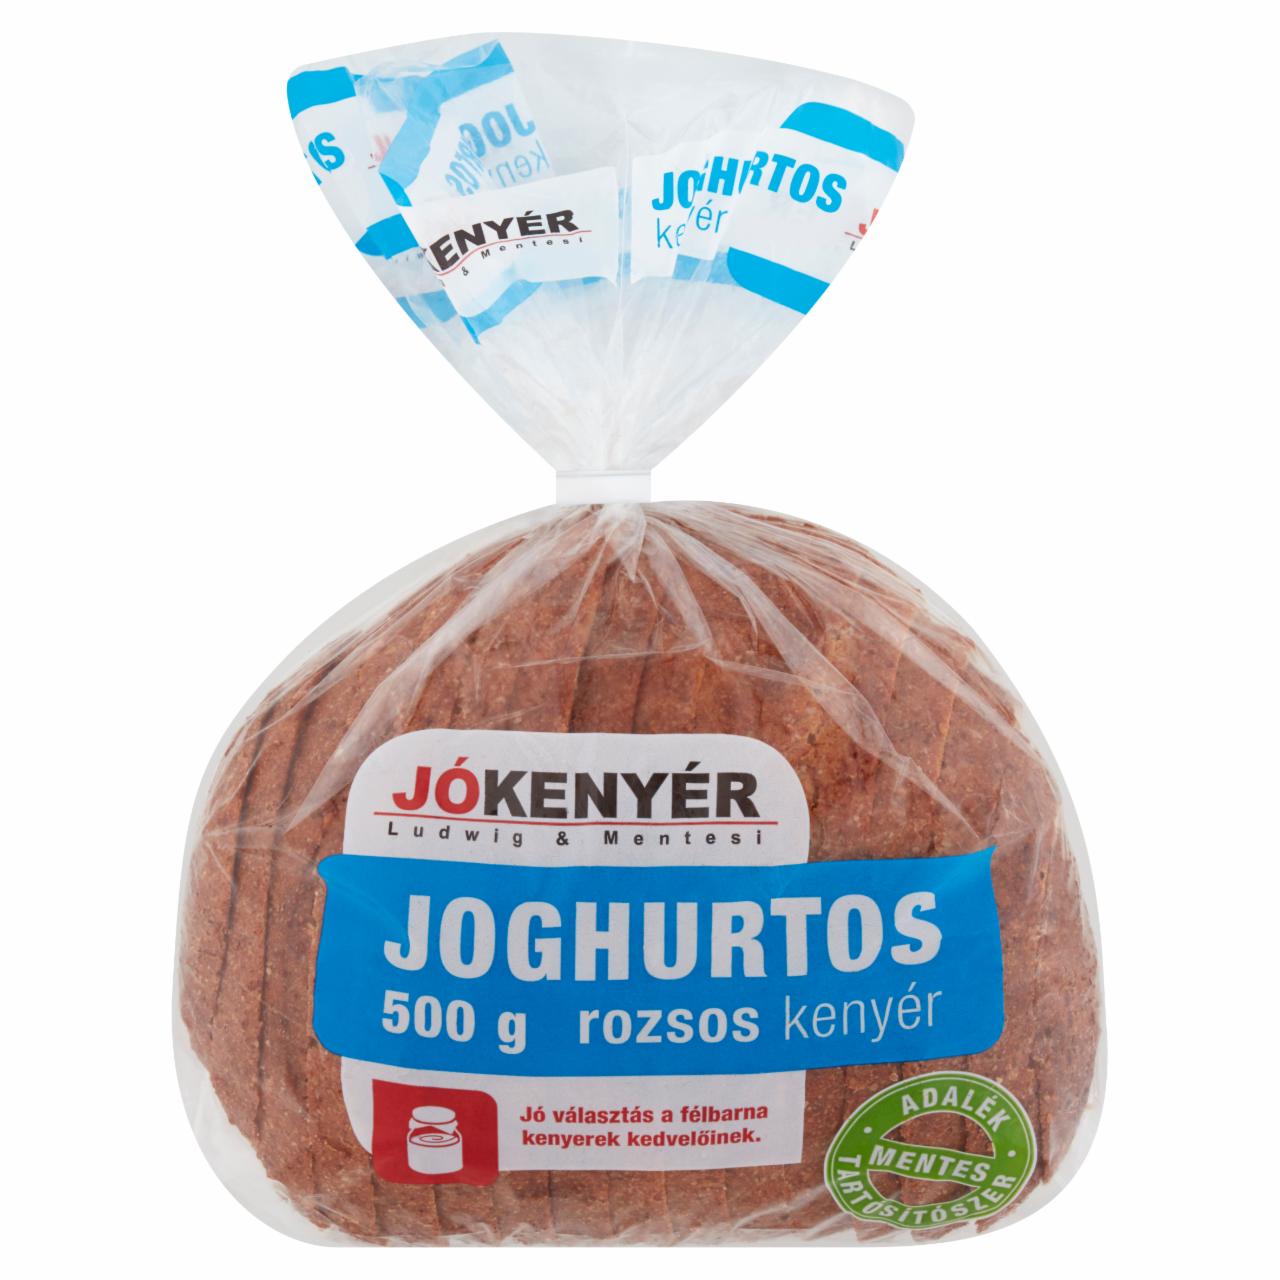 Képek - Jókenyér friss kovászos joghurtos rozsos kenyér 500 g